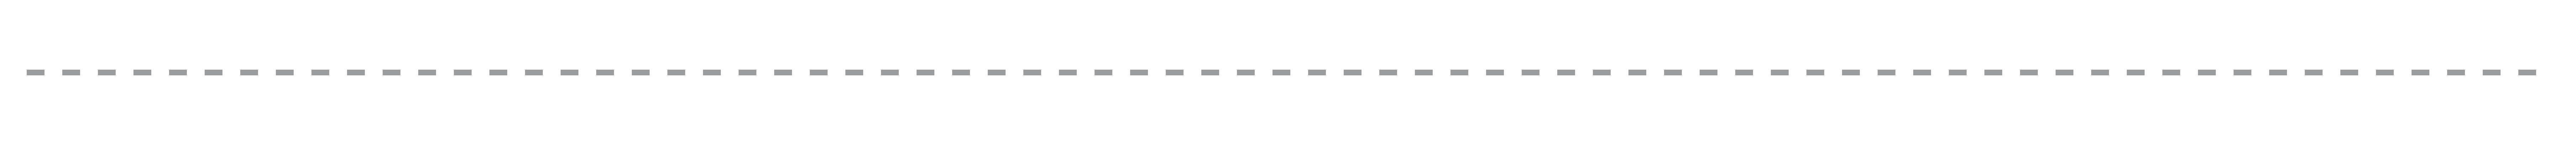 Тонкая пунктирная линия. Пунктирная линия на прозрачном фоне. Линия пунктиром на белом фоне. Пунктирная линия прямая на белом фоне.